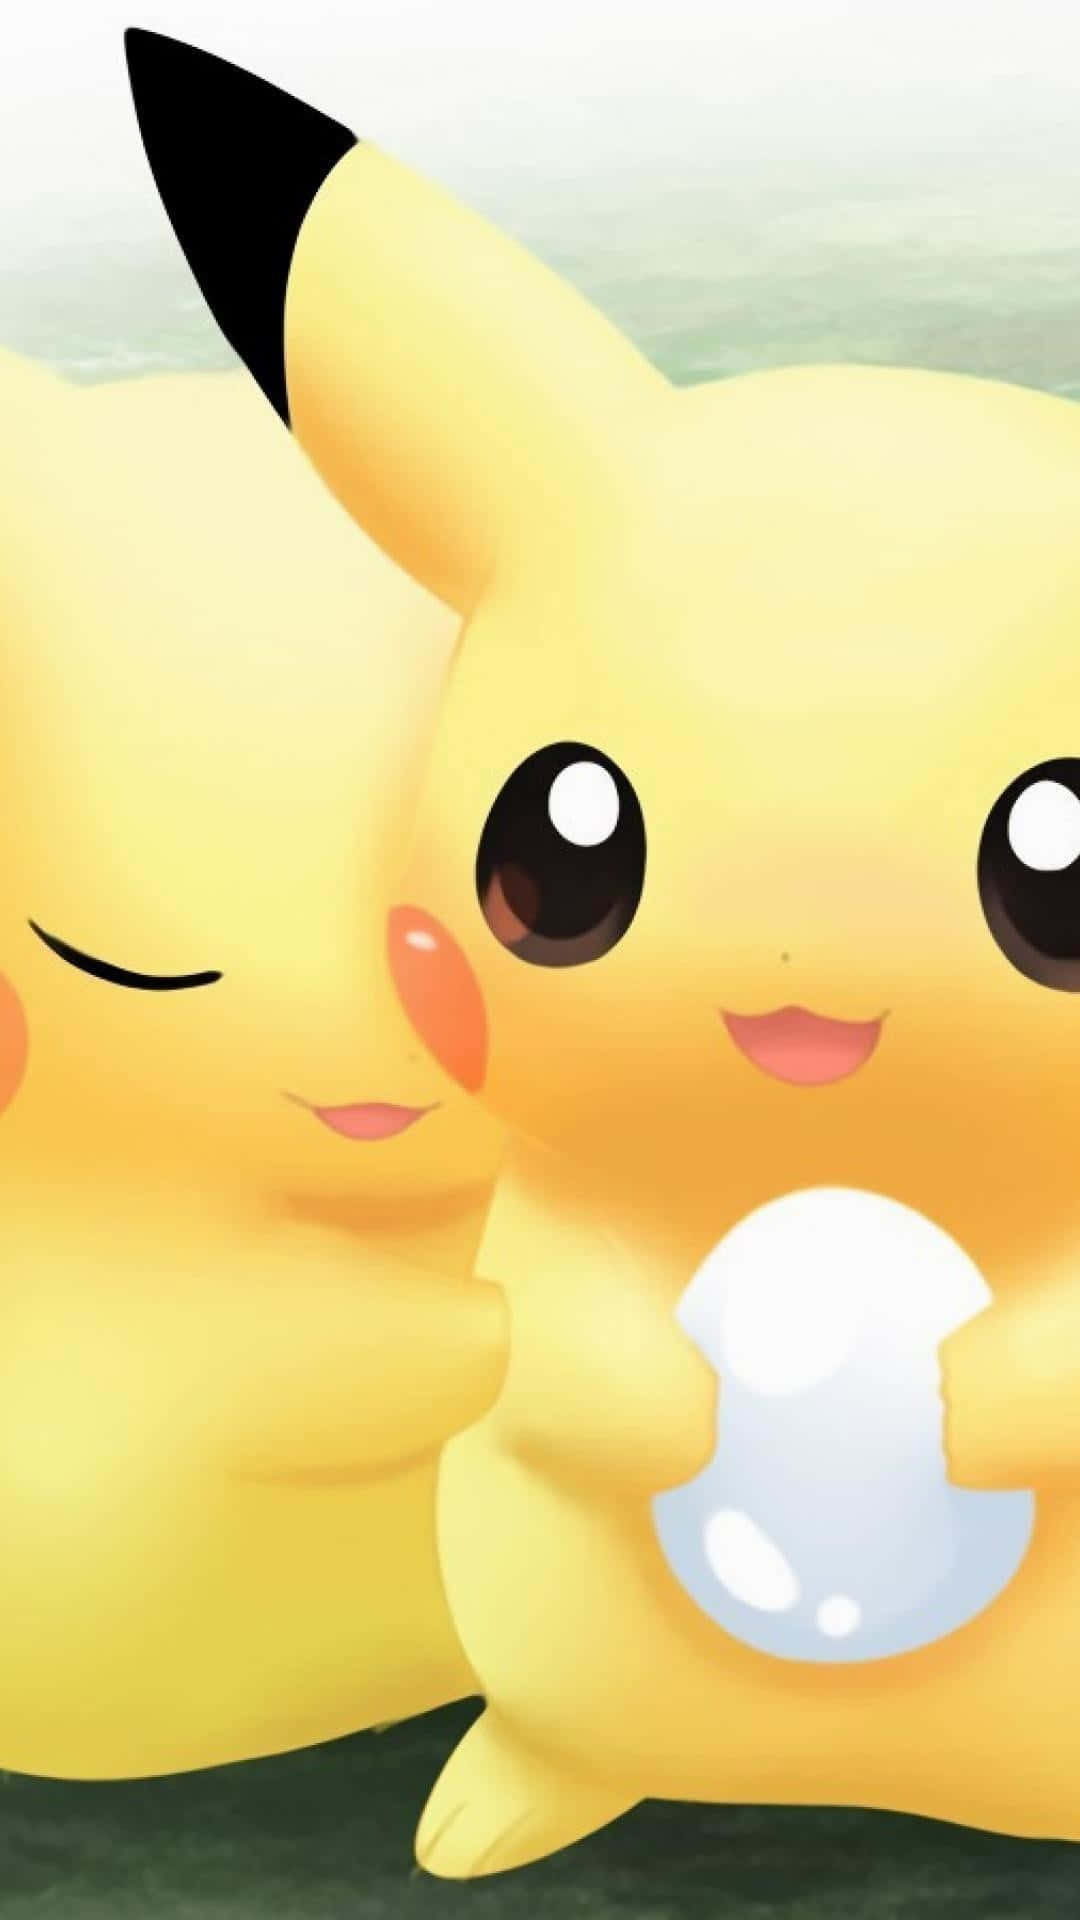 Baby Pikachu Is Too Cute! Wallpaper